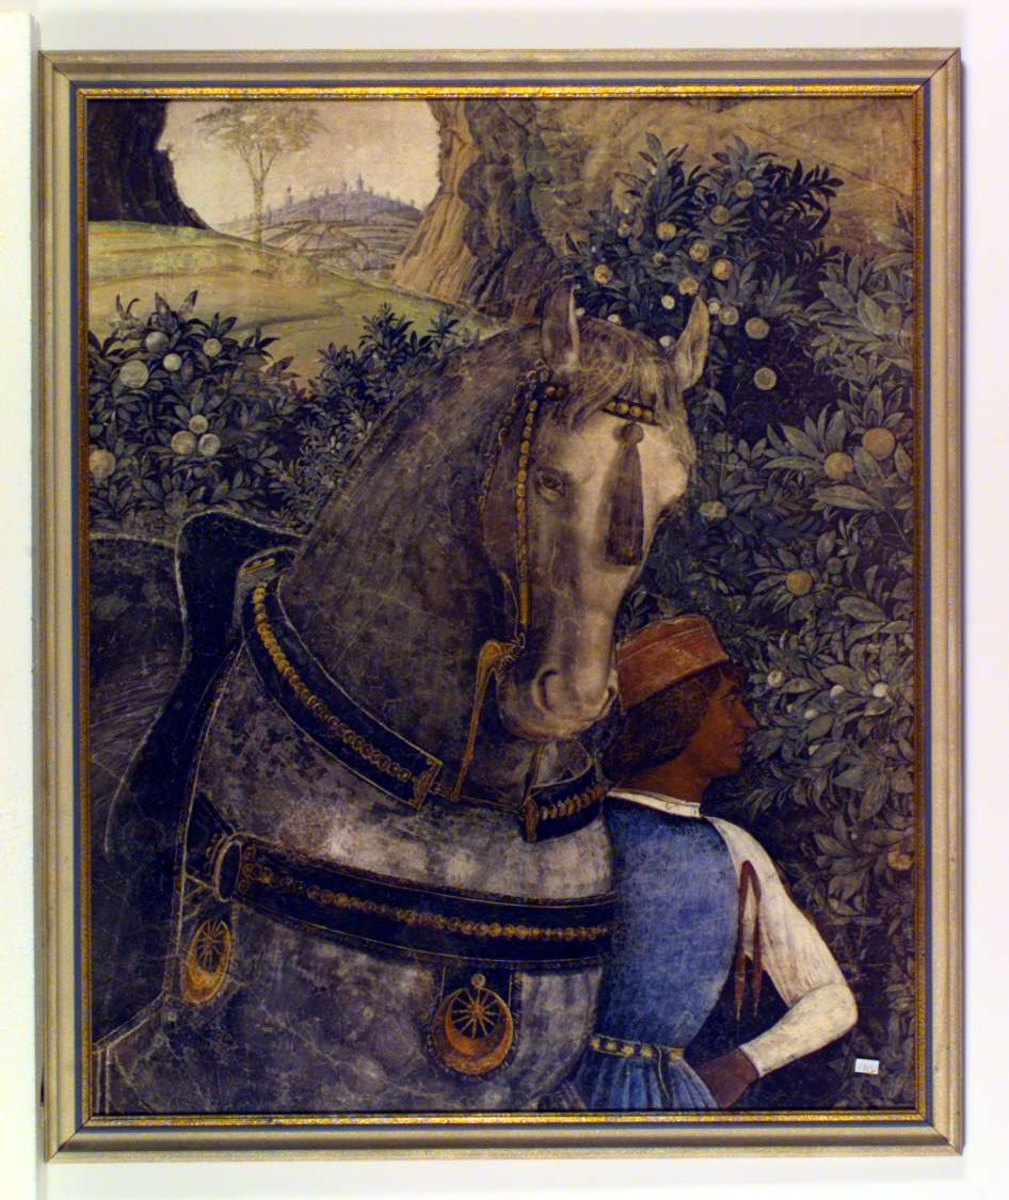 En staselig hest dominerer bildet. Den leies av en mann i renessanseklær. I bakgrunnen et italiensk landskap med en landsby med sine karakteristiske høye tårn.